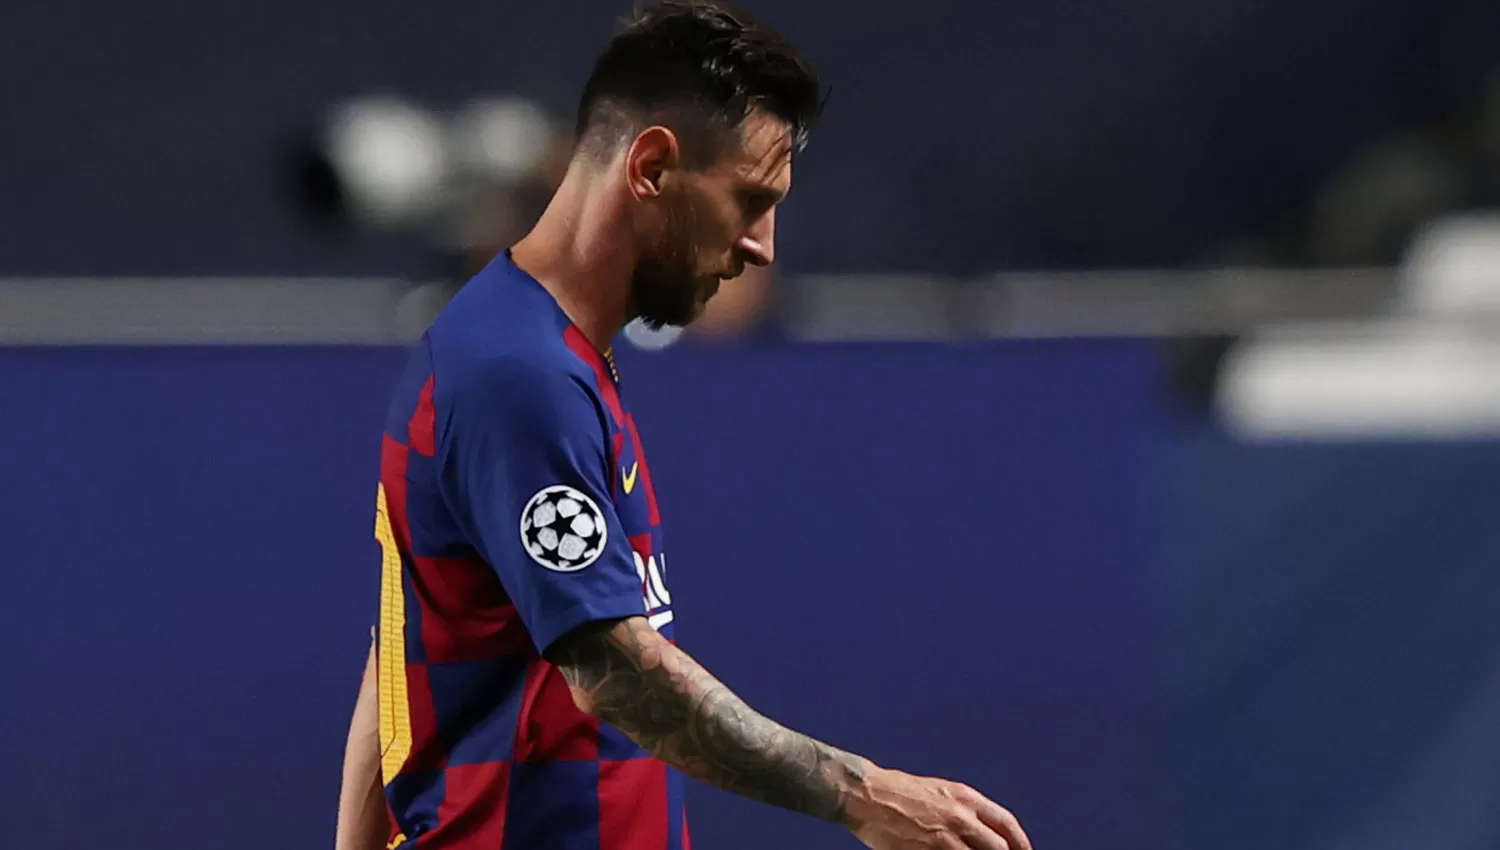 DURO GOLPE. La goleada sufrida ante Bayern Munich podría marcar un punto de inflexión en la relación Messi-Barcelona.